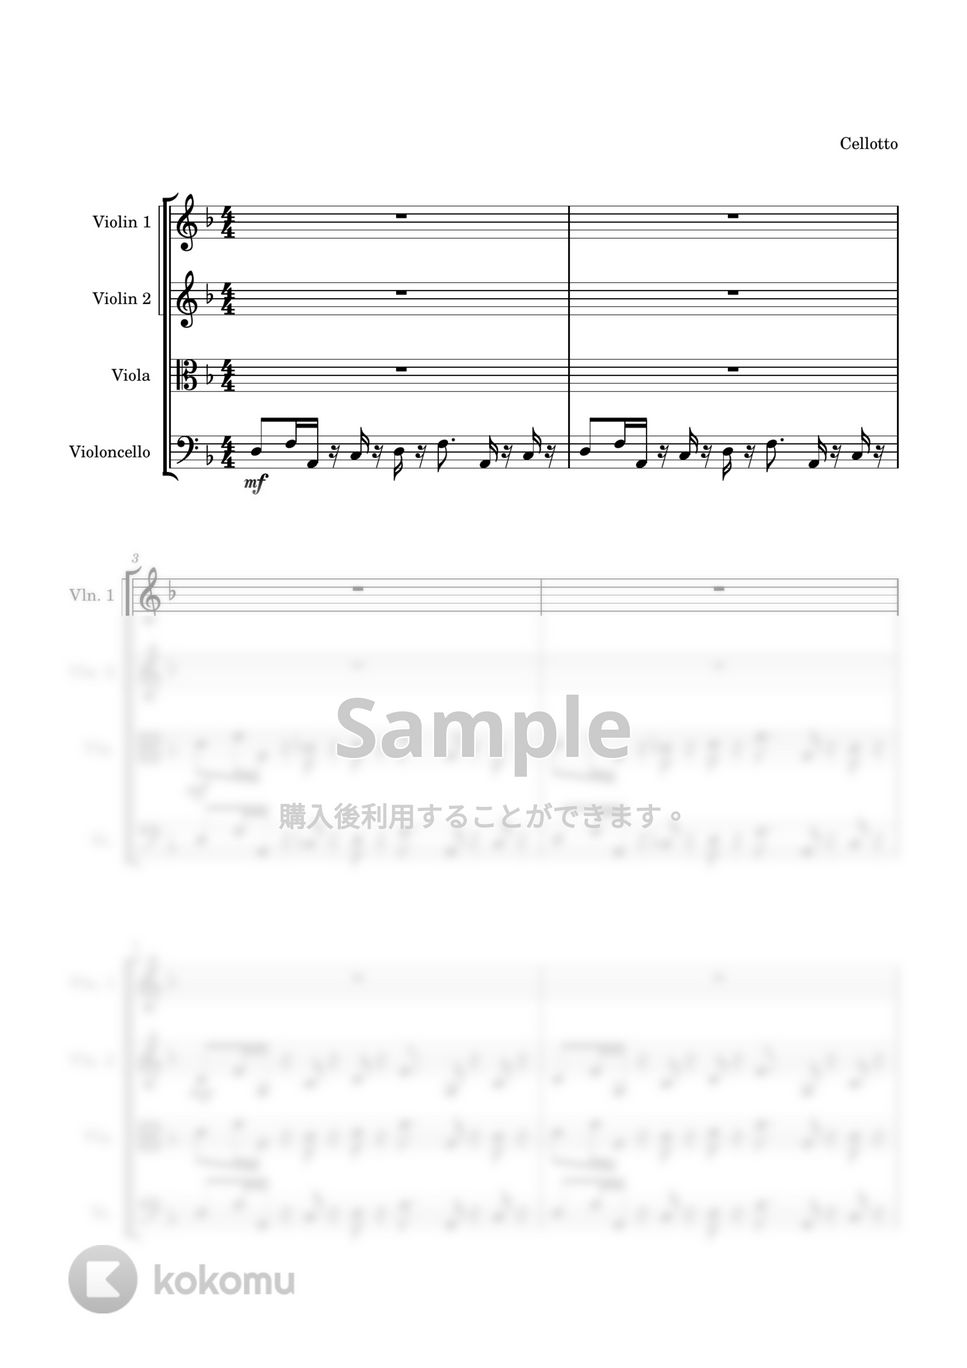 葉加瀬太郎 - 情熱大陸 (弦楽四重奏) by Cellotto